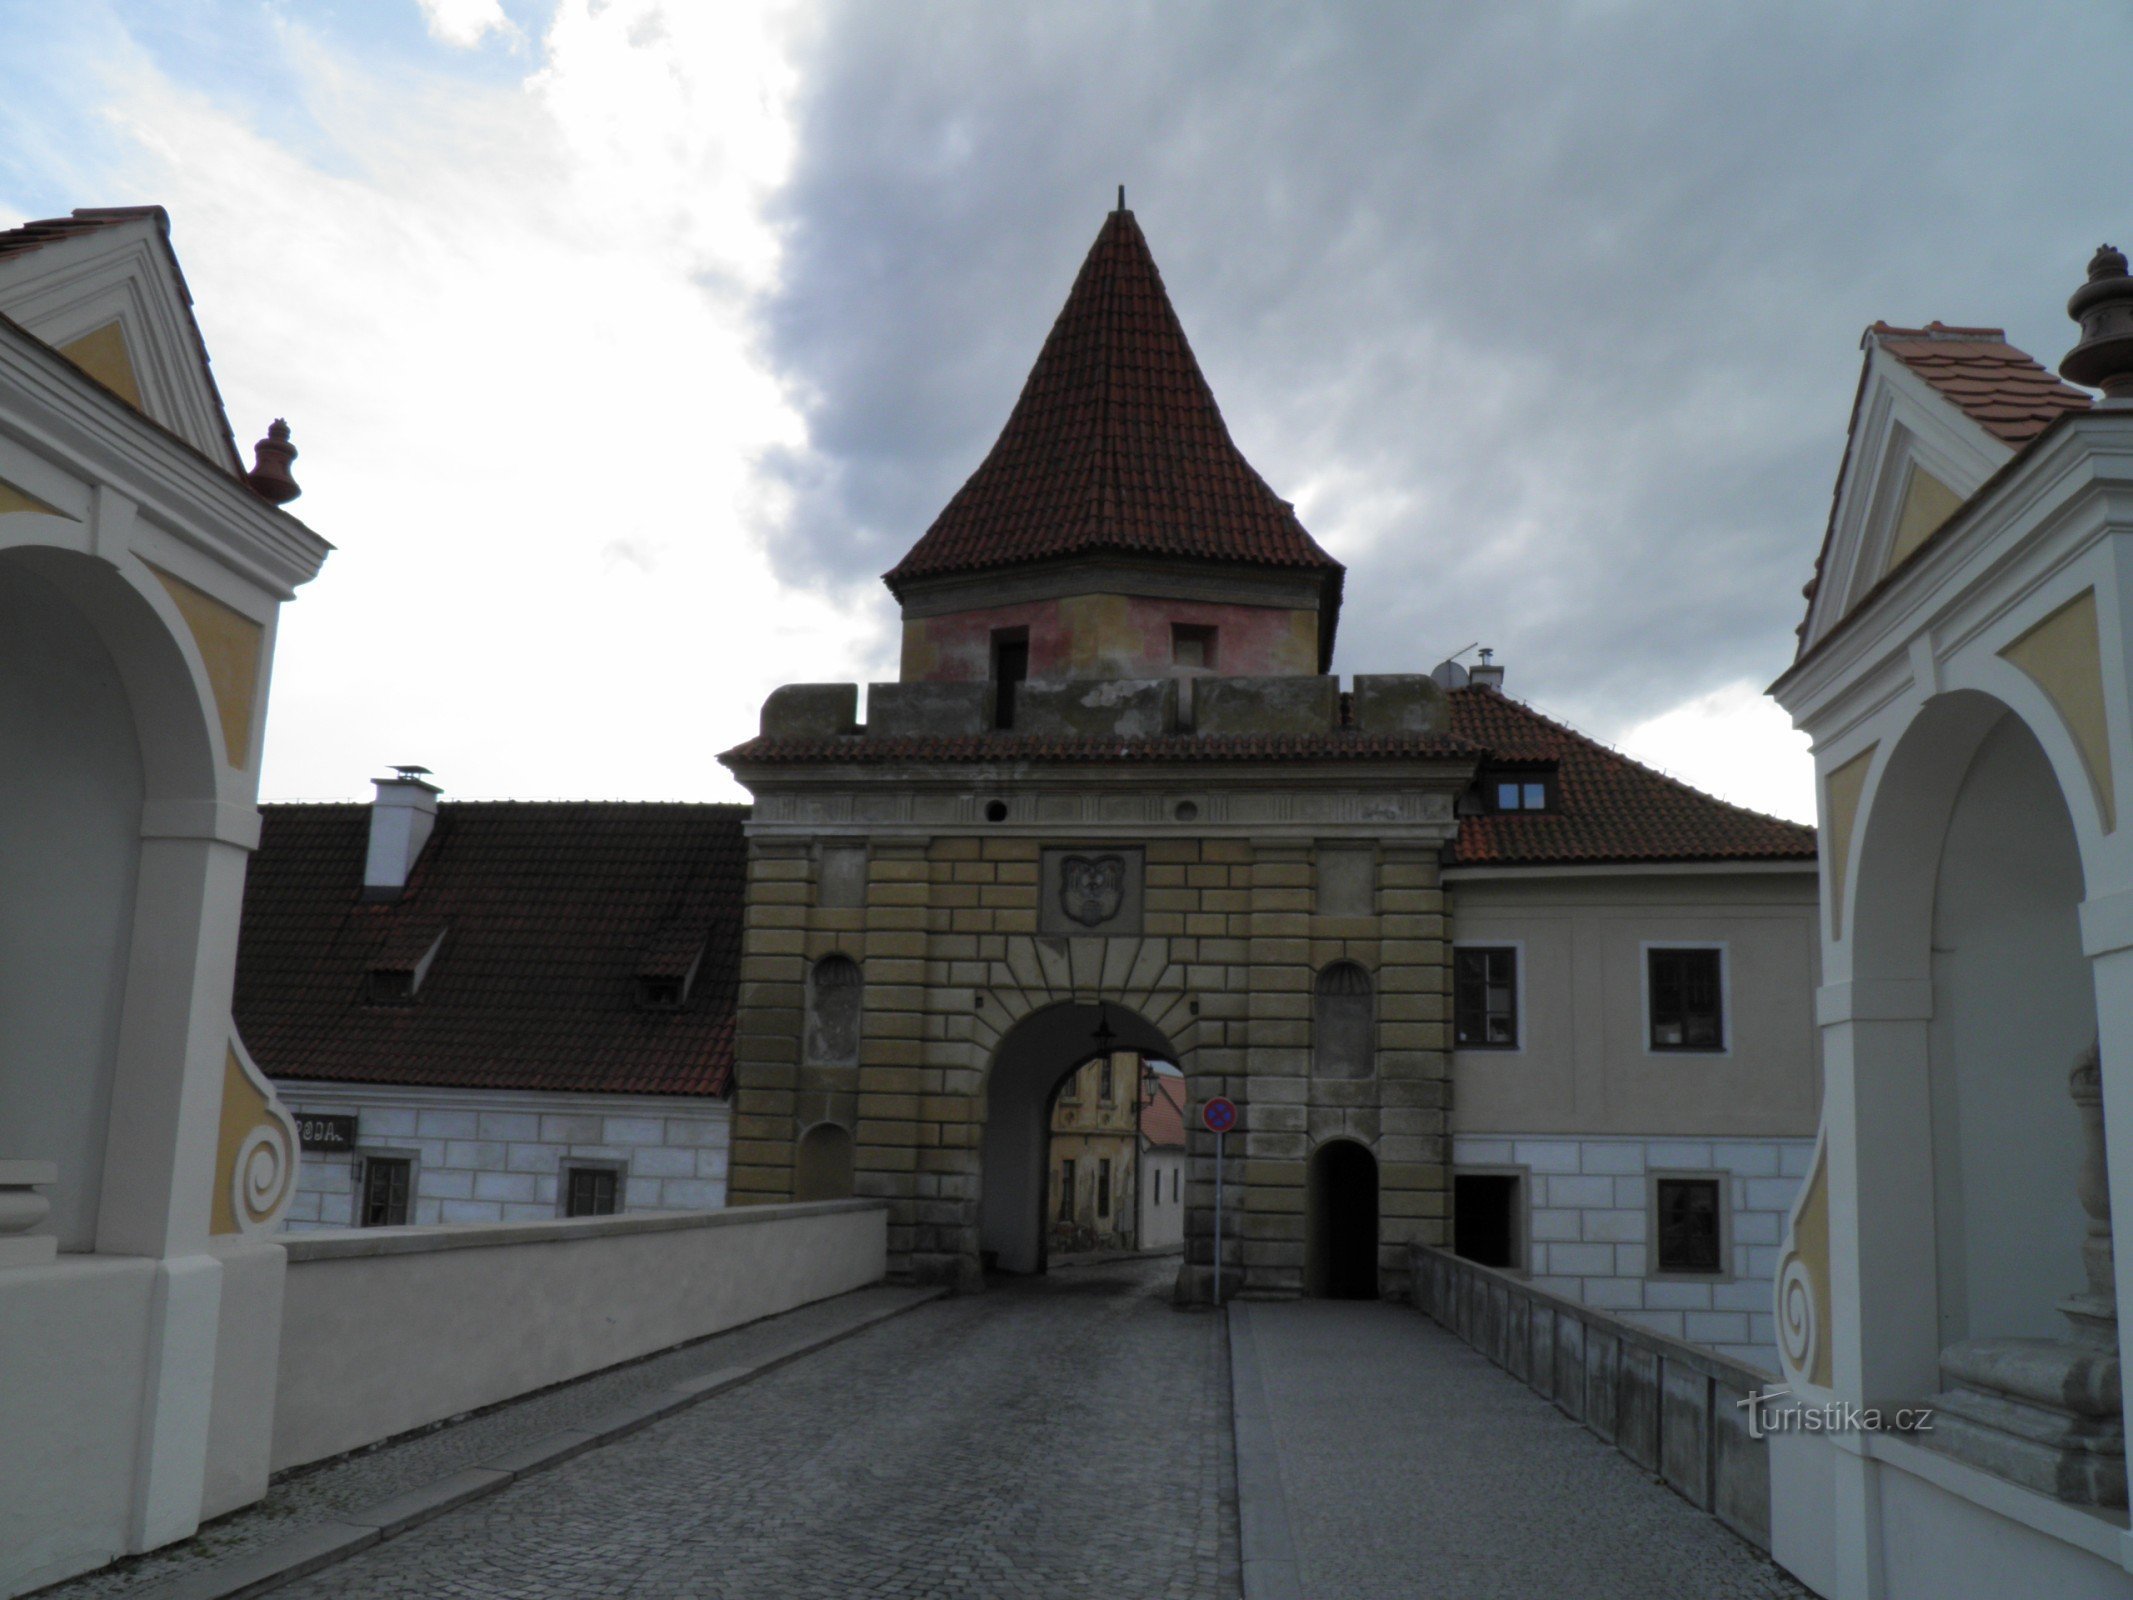 Budejovice Gate.